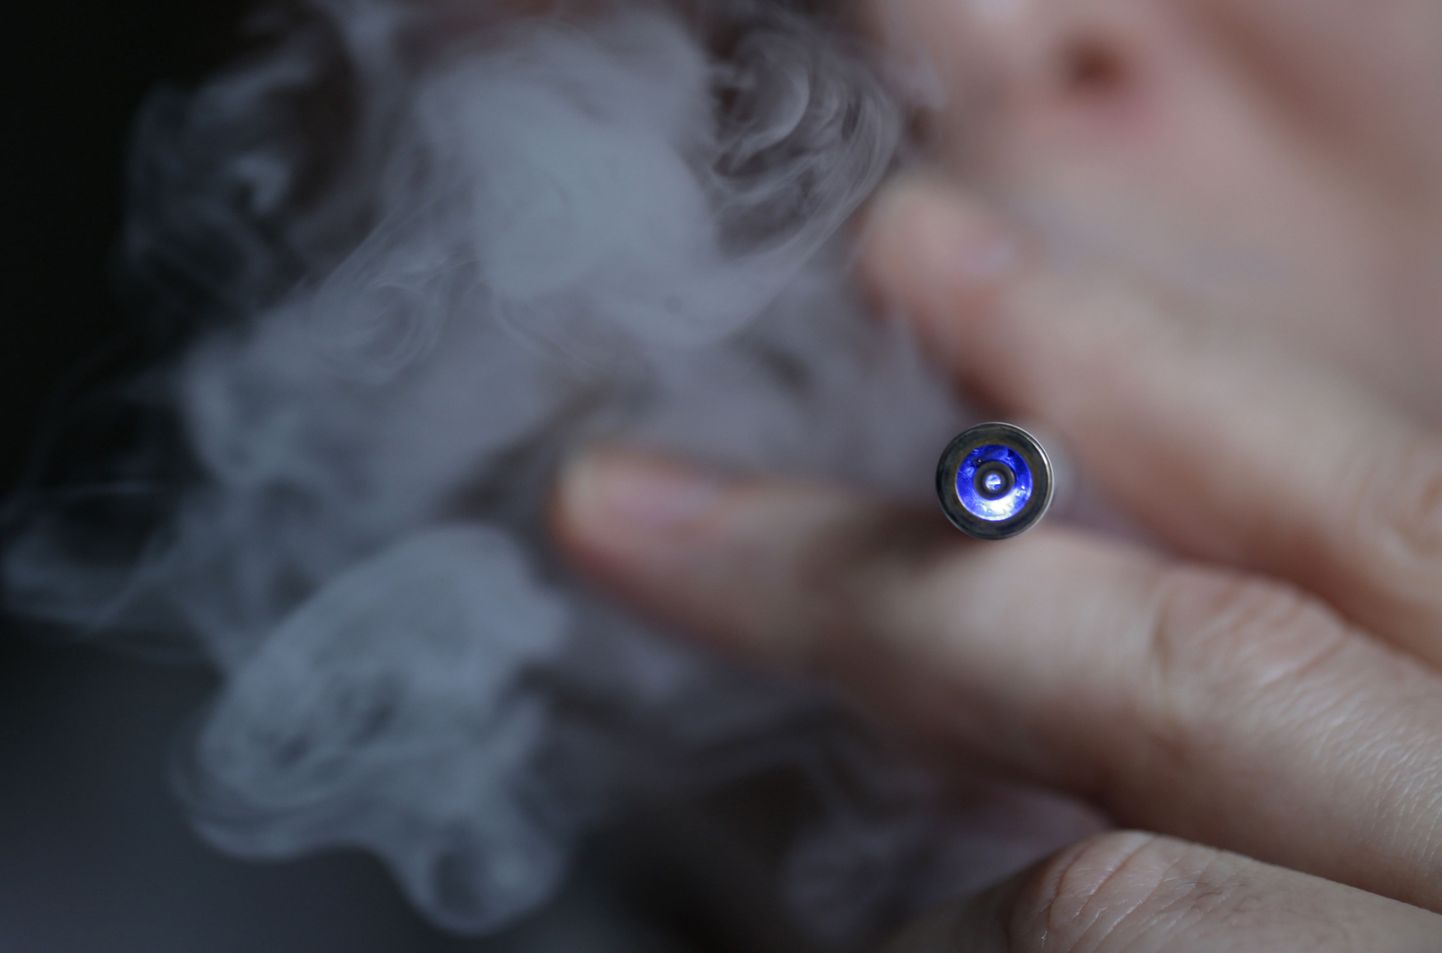 Praegu kehtiv seadus käsitleb e-sigarette traditsioonilistest tubakatoodetest erinevalt.